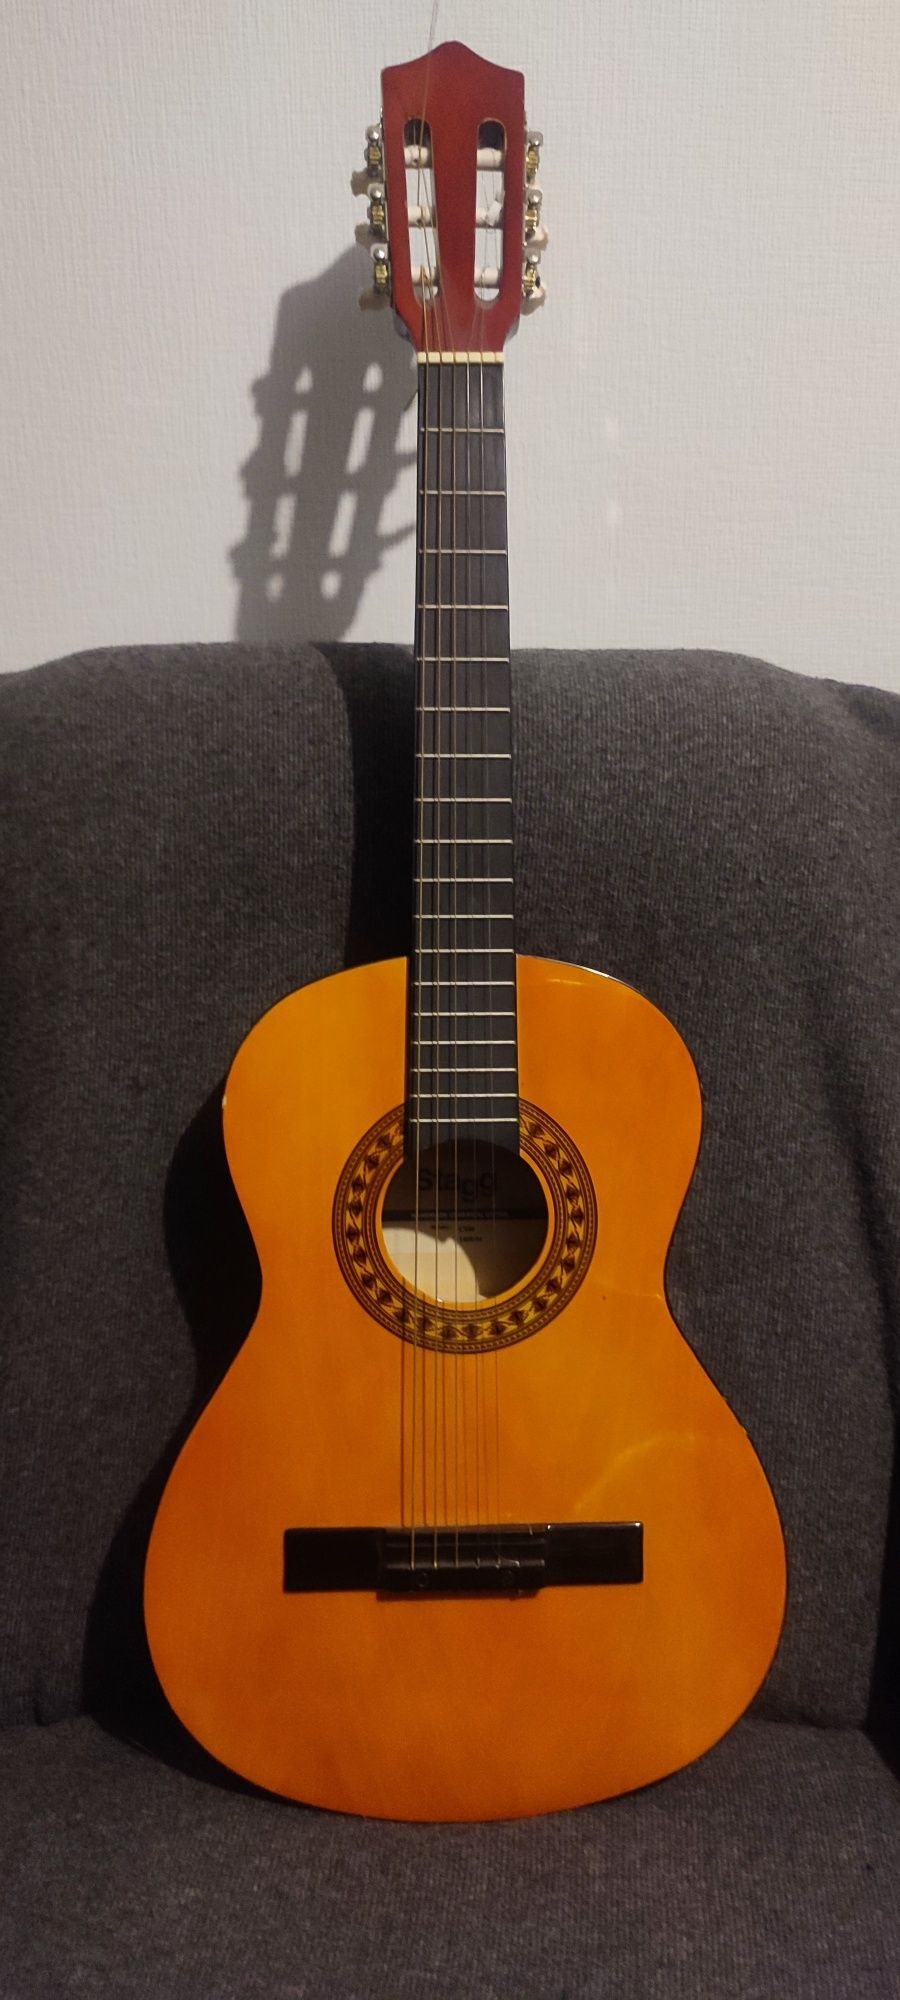 Класична гітара stagg model c 530